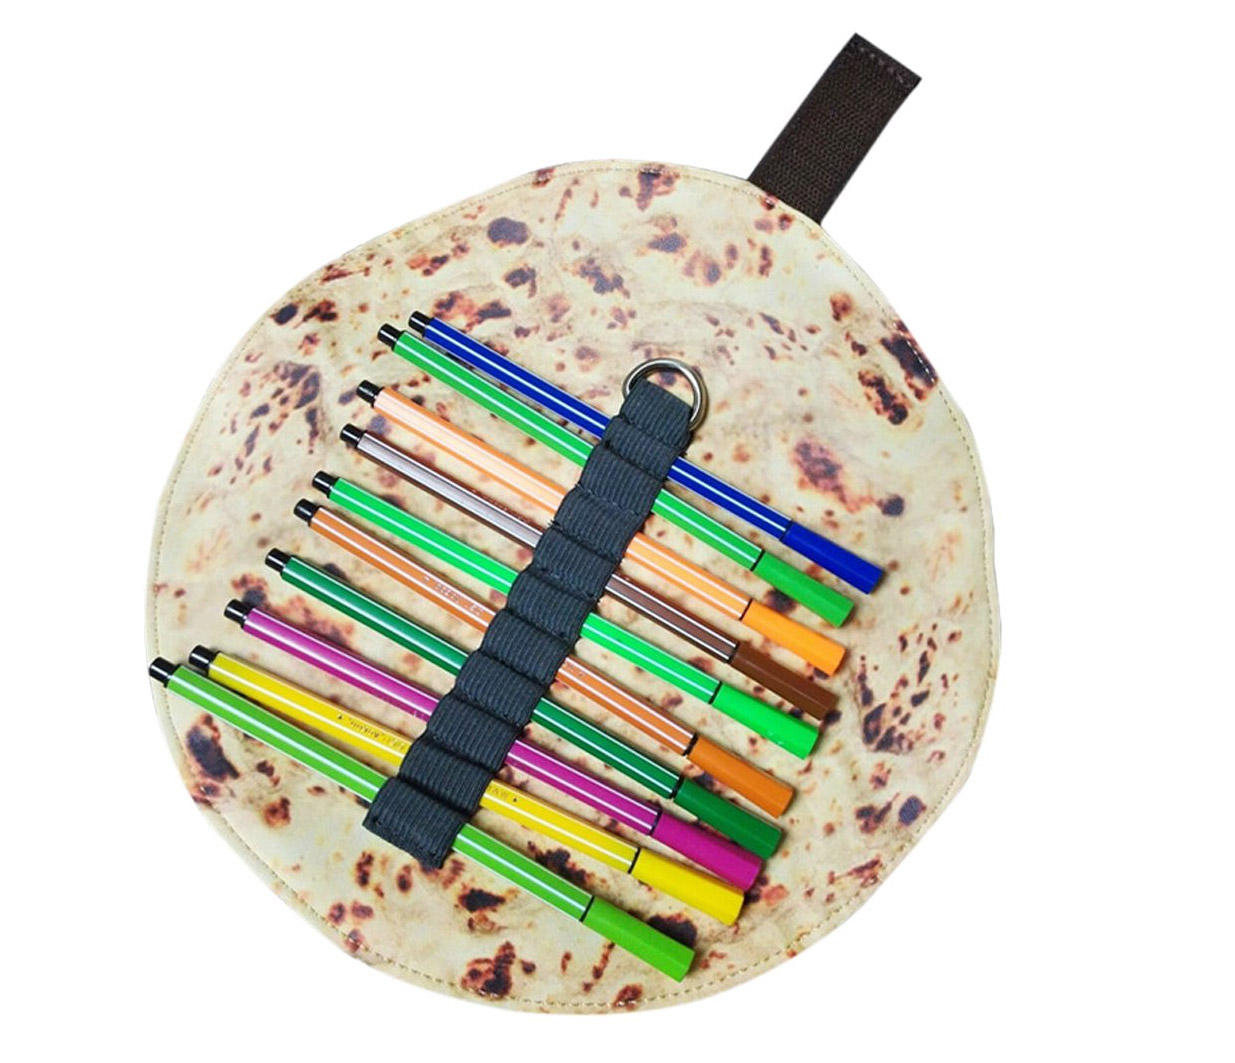 Pita Bread Art Supply Holder - Burrito roll pencil case